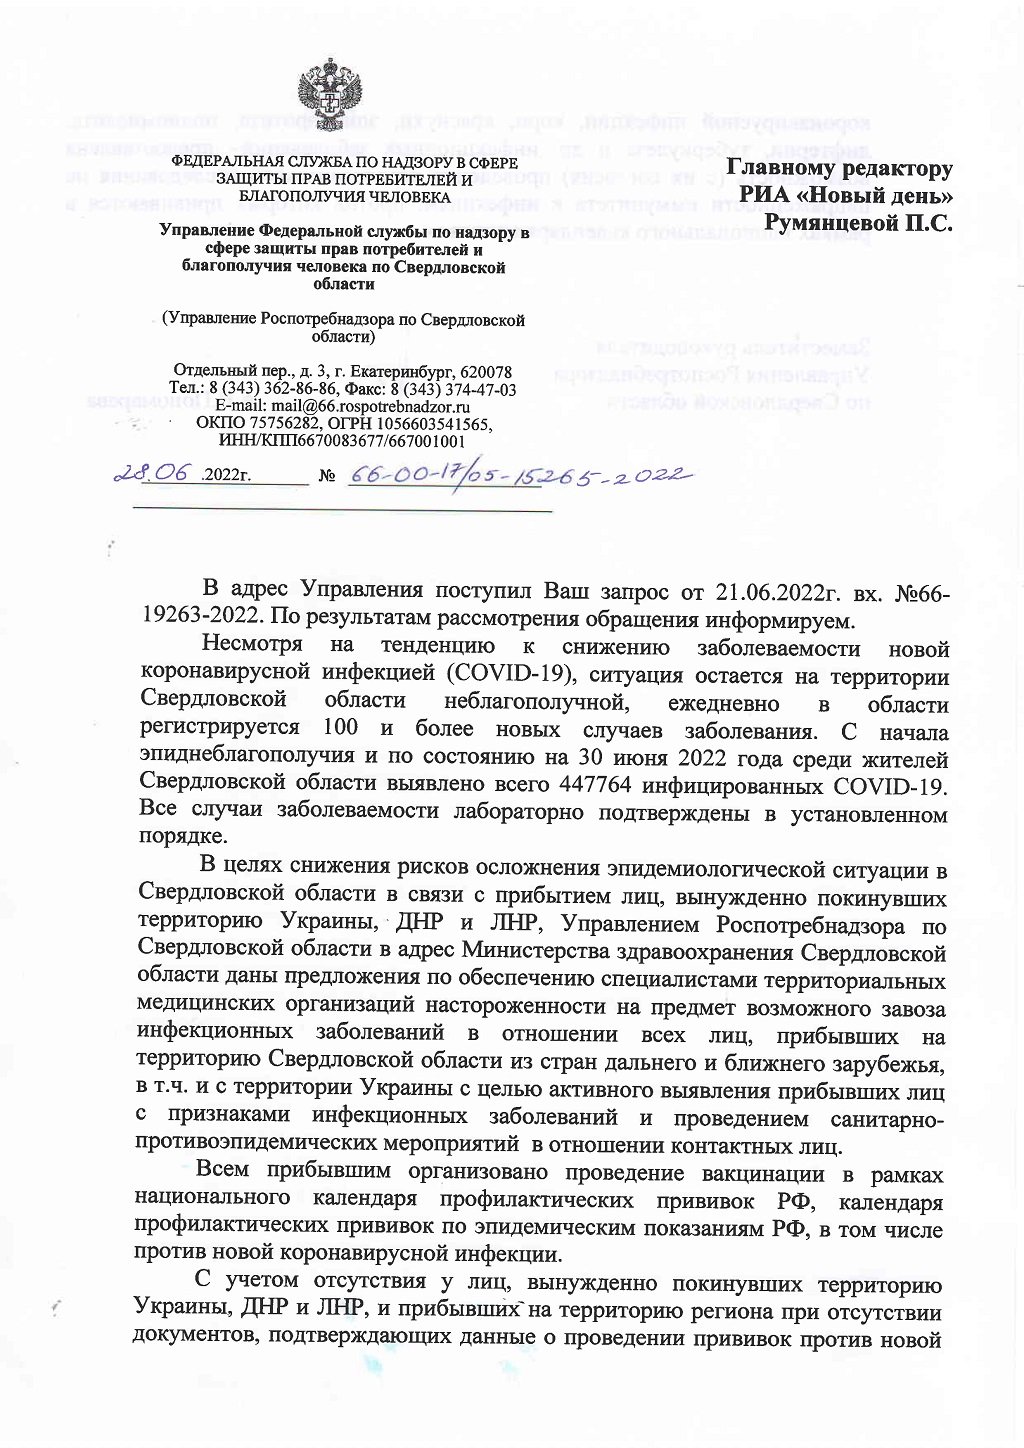 При вызове скорой помощи пациентов теперь спрашивают о контактах с приехавшими с Украины, ЛНР и ДНР (ДОКУМЕНТ)